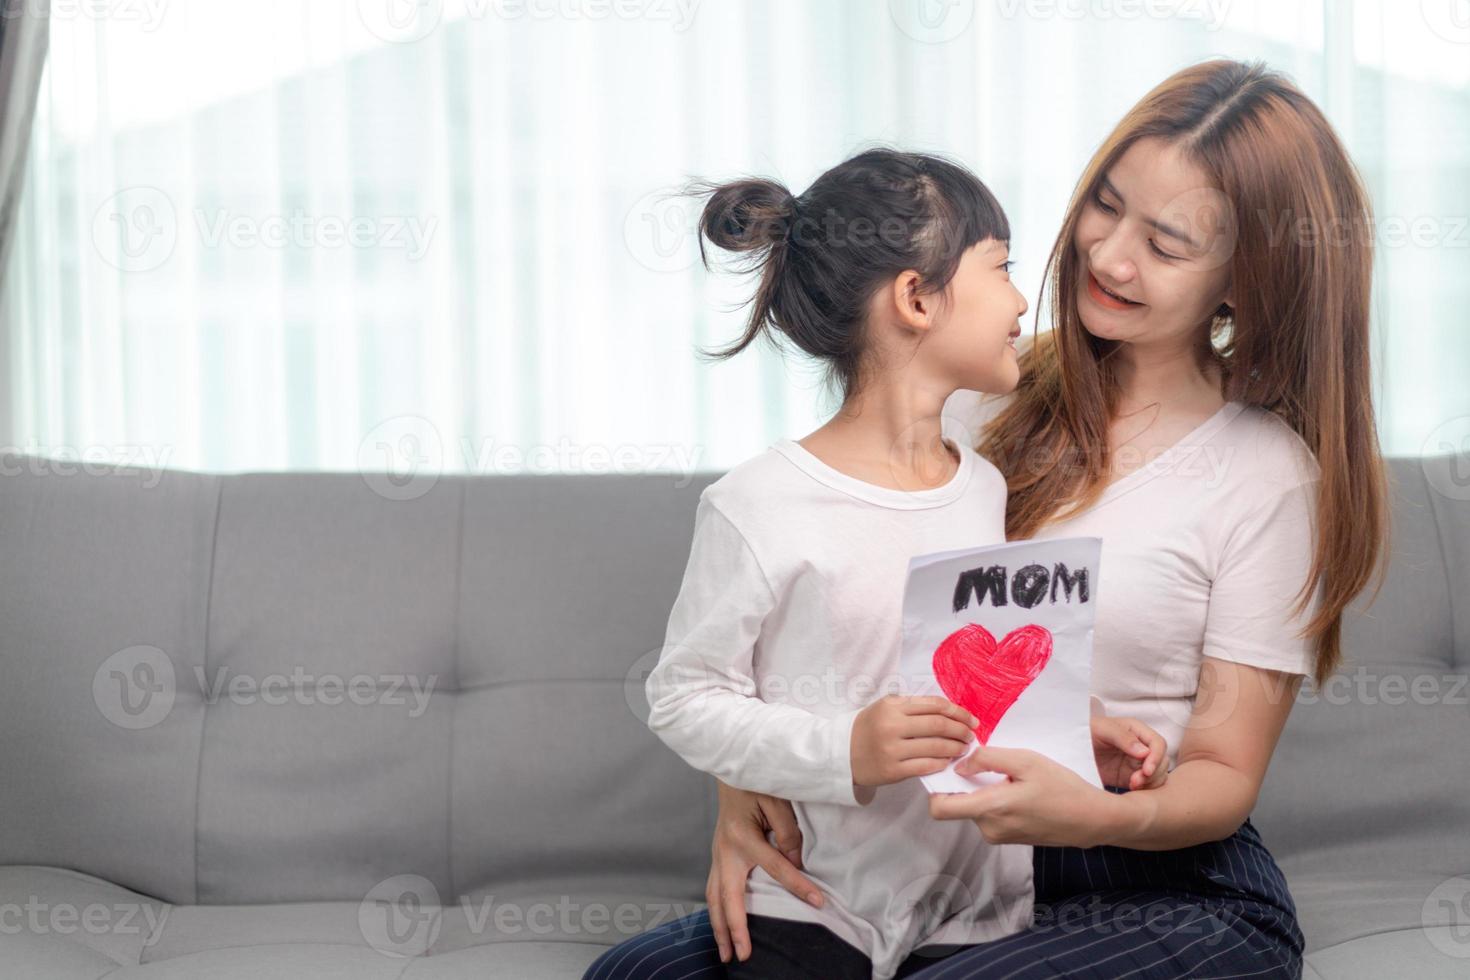 asiatisk härlig ljuv förskola dotter gratulerar mamma med liv händelse födelsedag Semester, förbereder för henne handgjort posta kort med röd målad hjärta symbol av ovillkorlig kärlek, mor dag begrepp foto